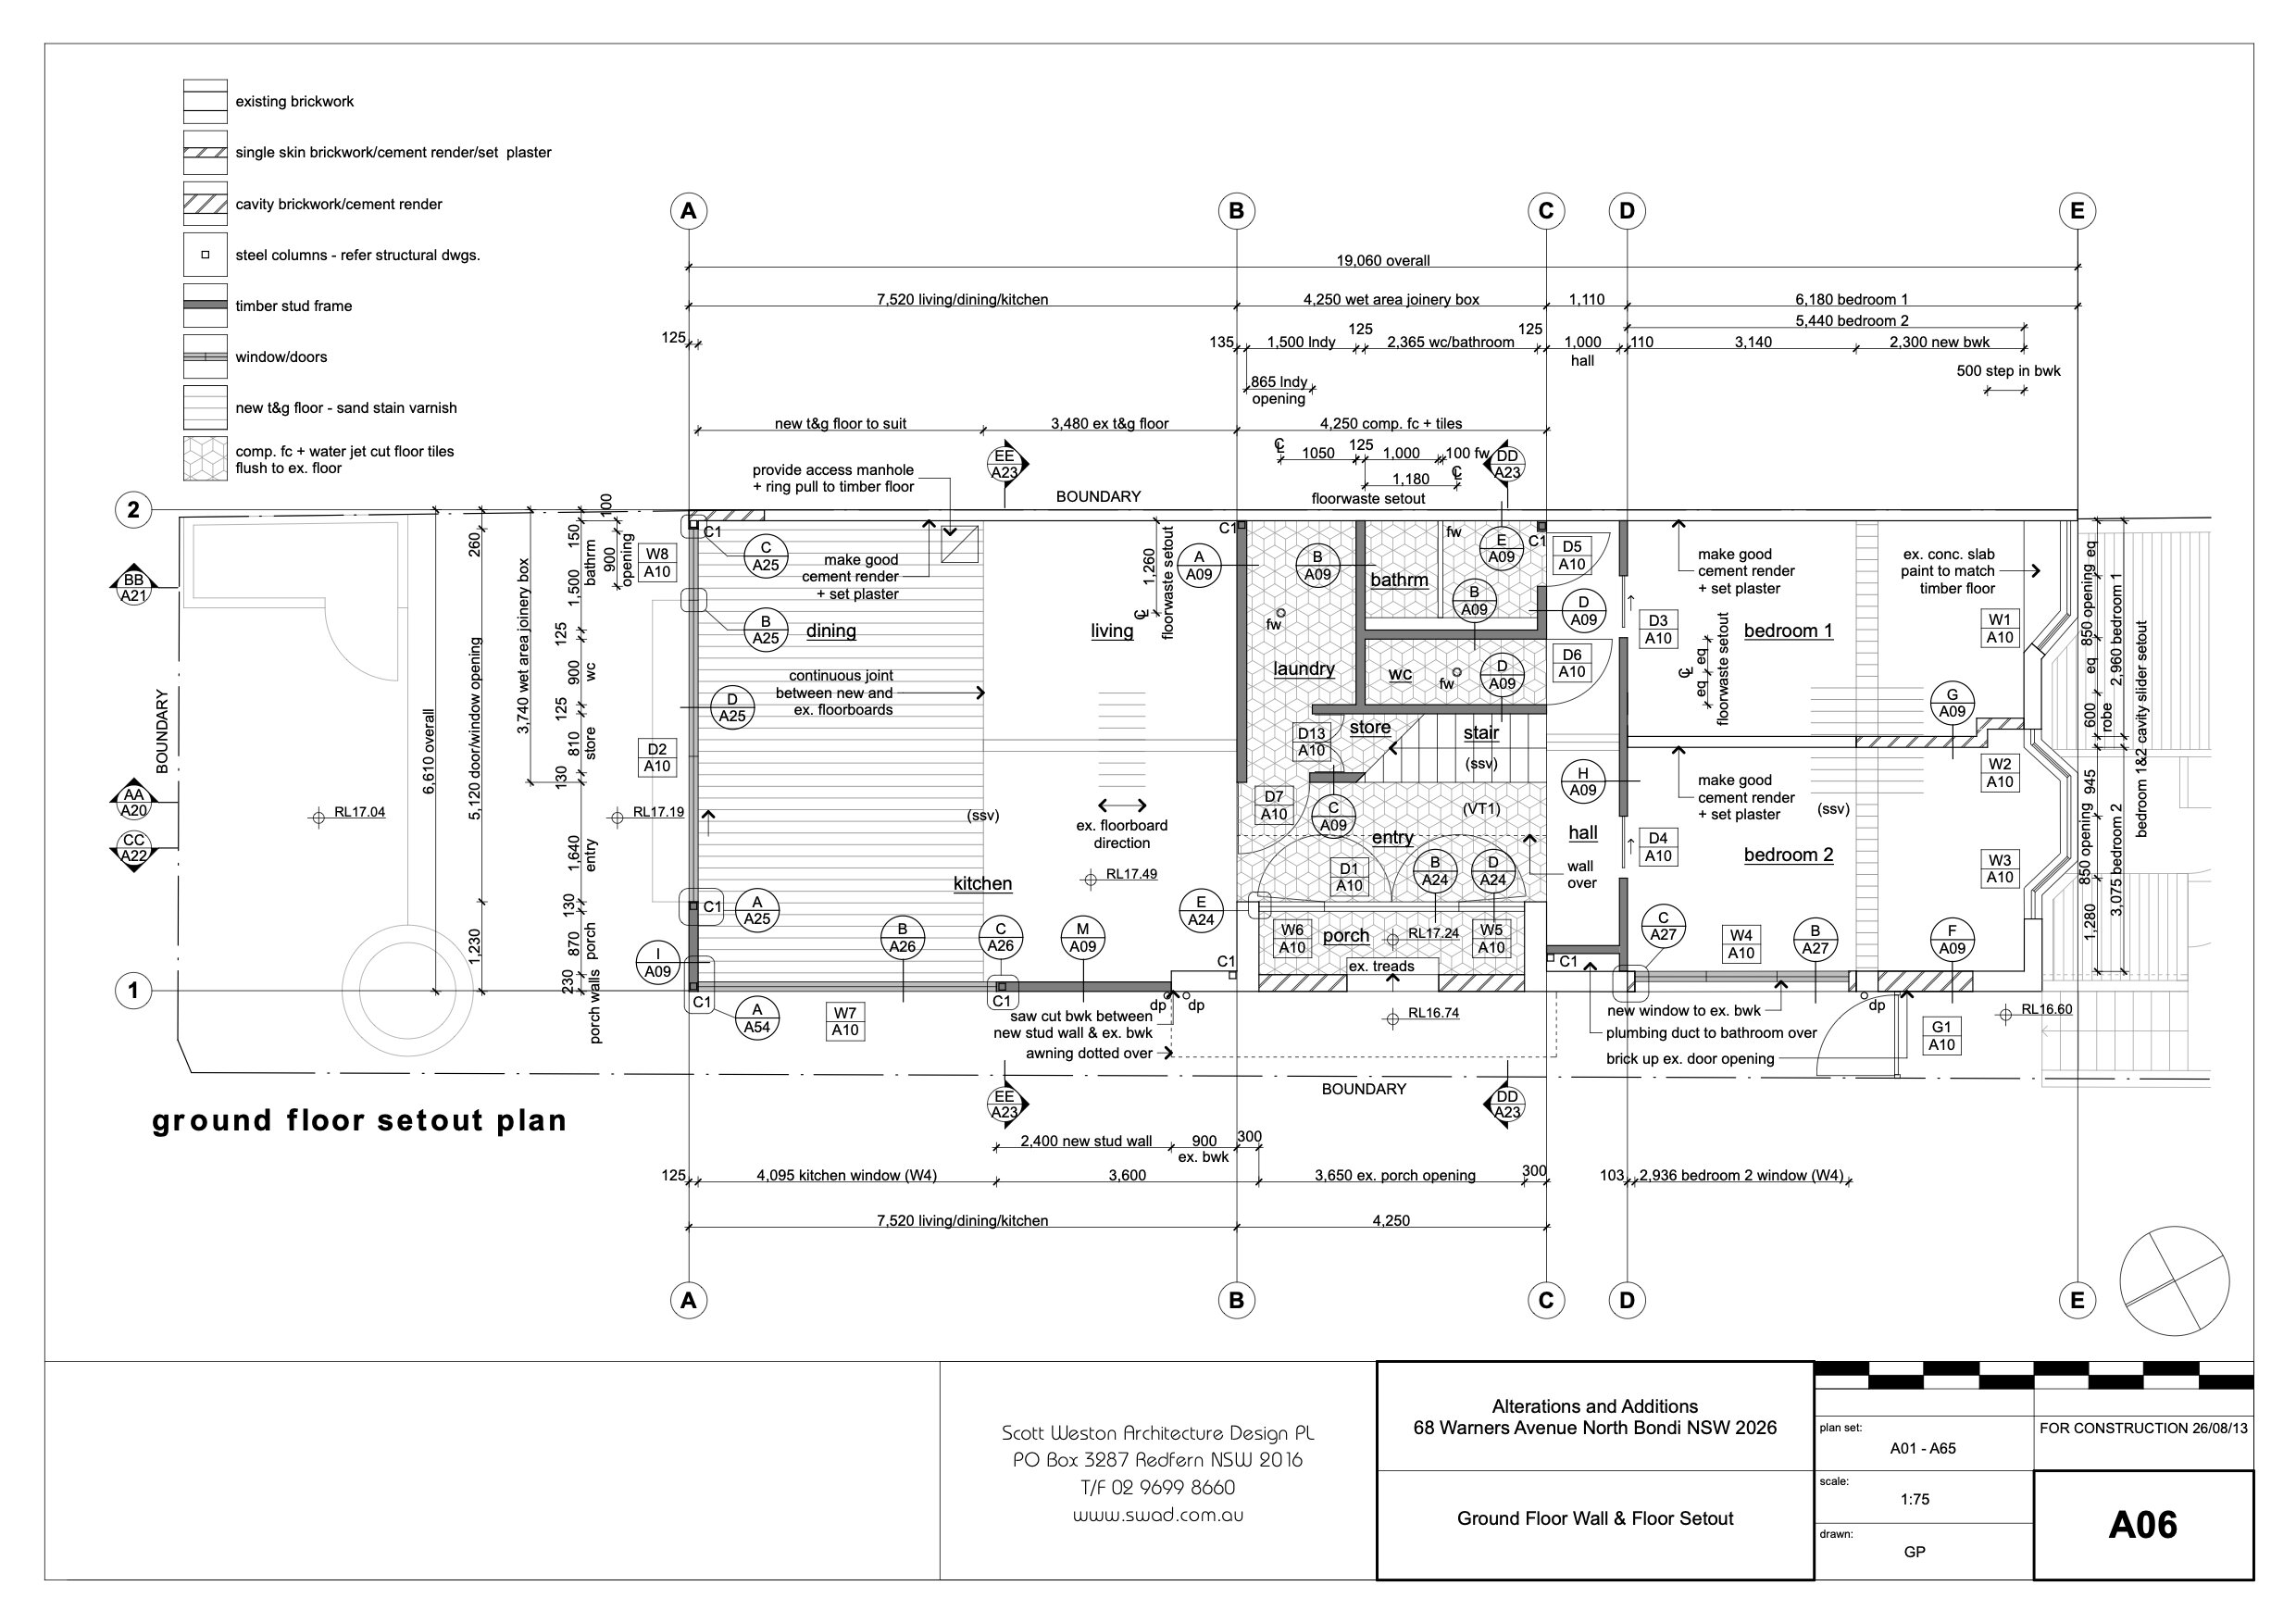 A06 Ground Floor Wall & Floor Setout.jpg